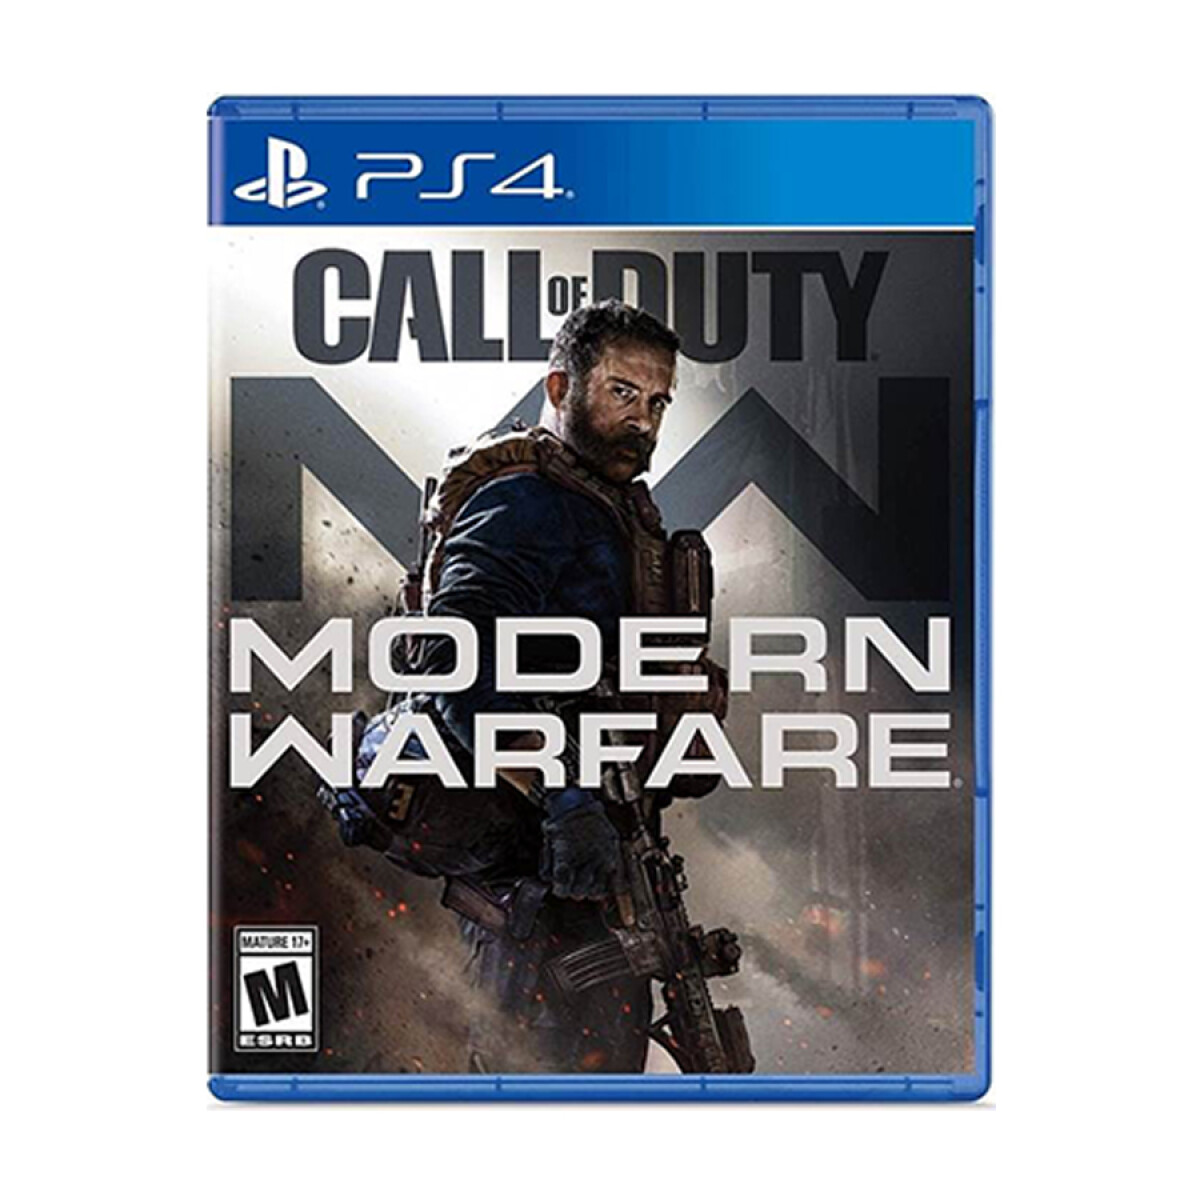 Call of Duty Modern Warfare 